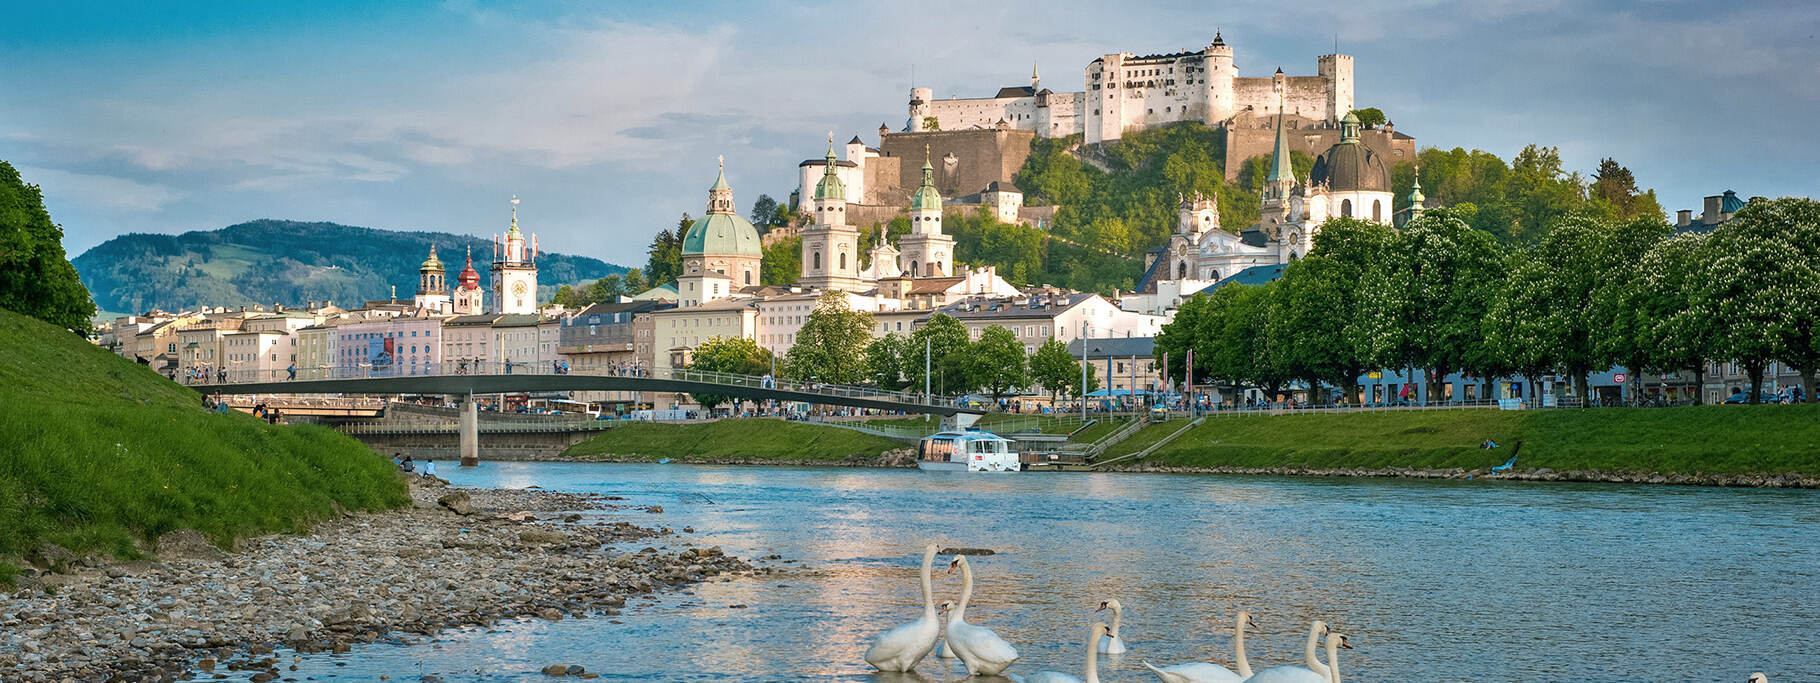 Stadtansicht von Salzburg © Tourismus Salzburg GmbH